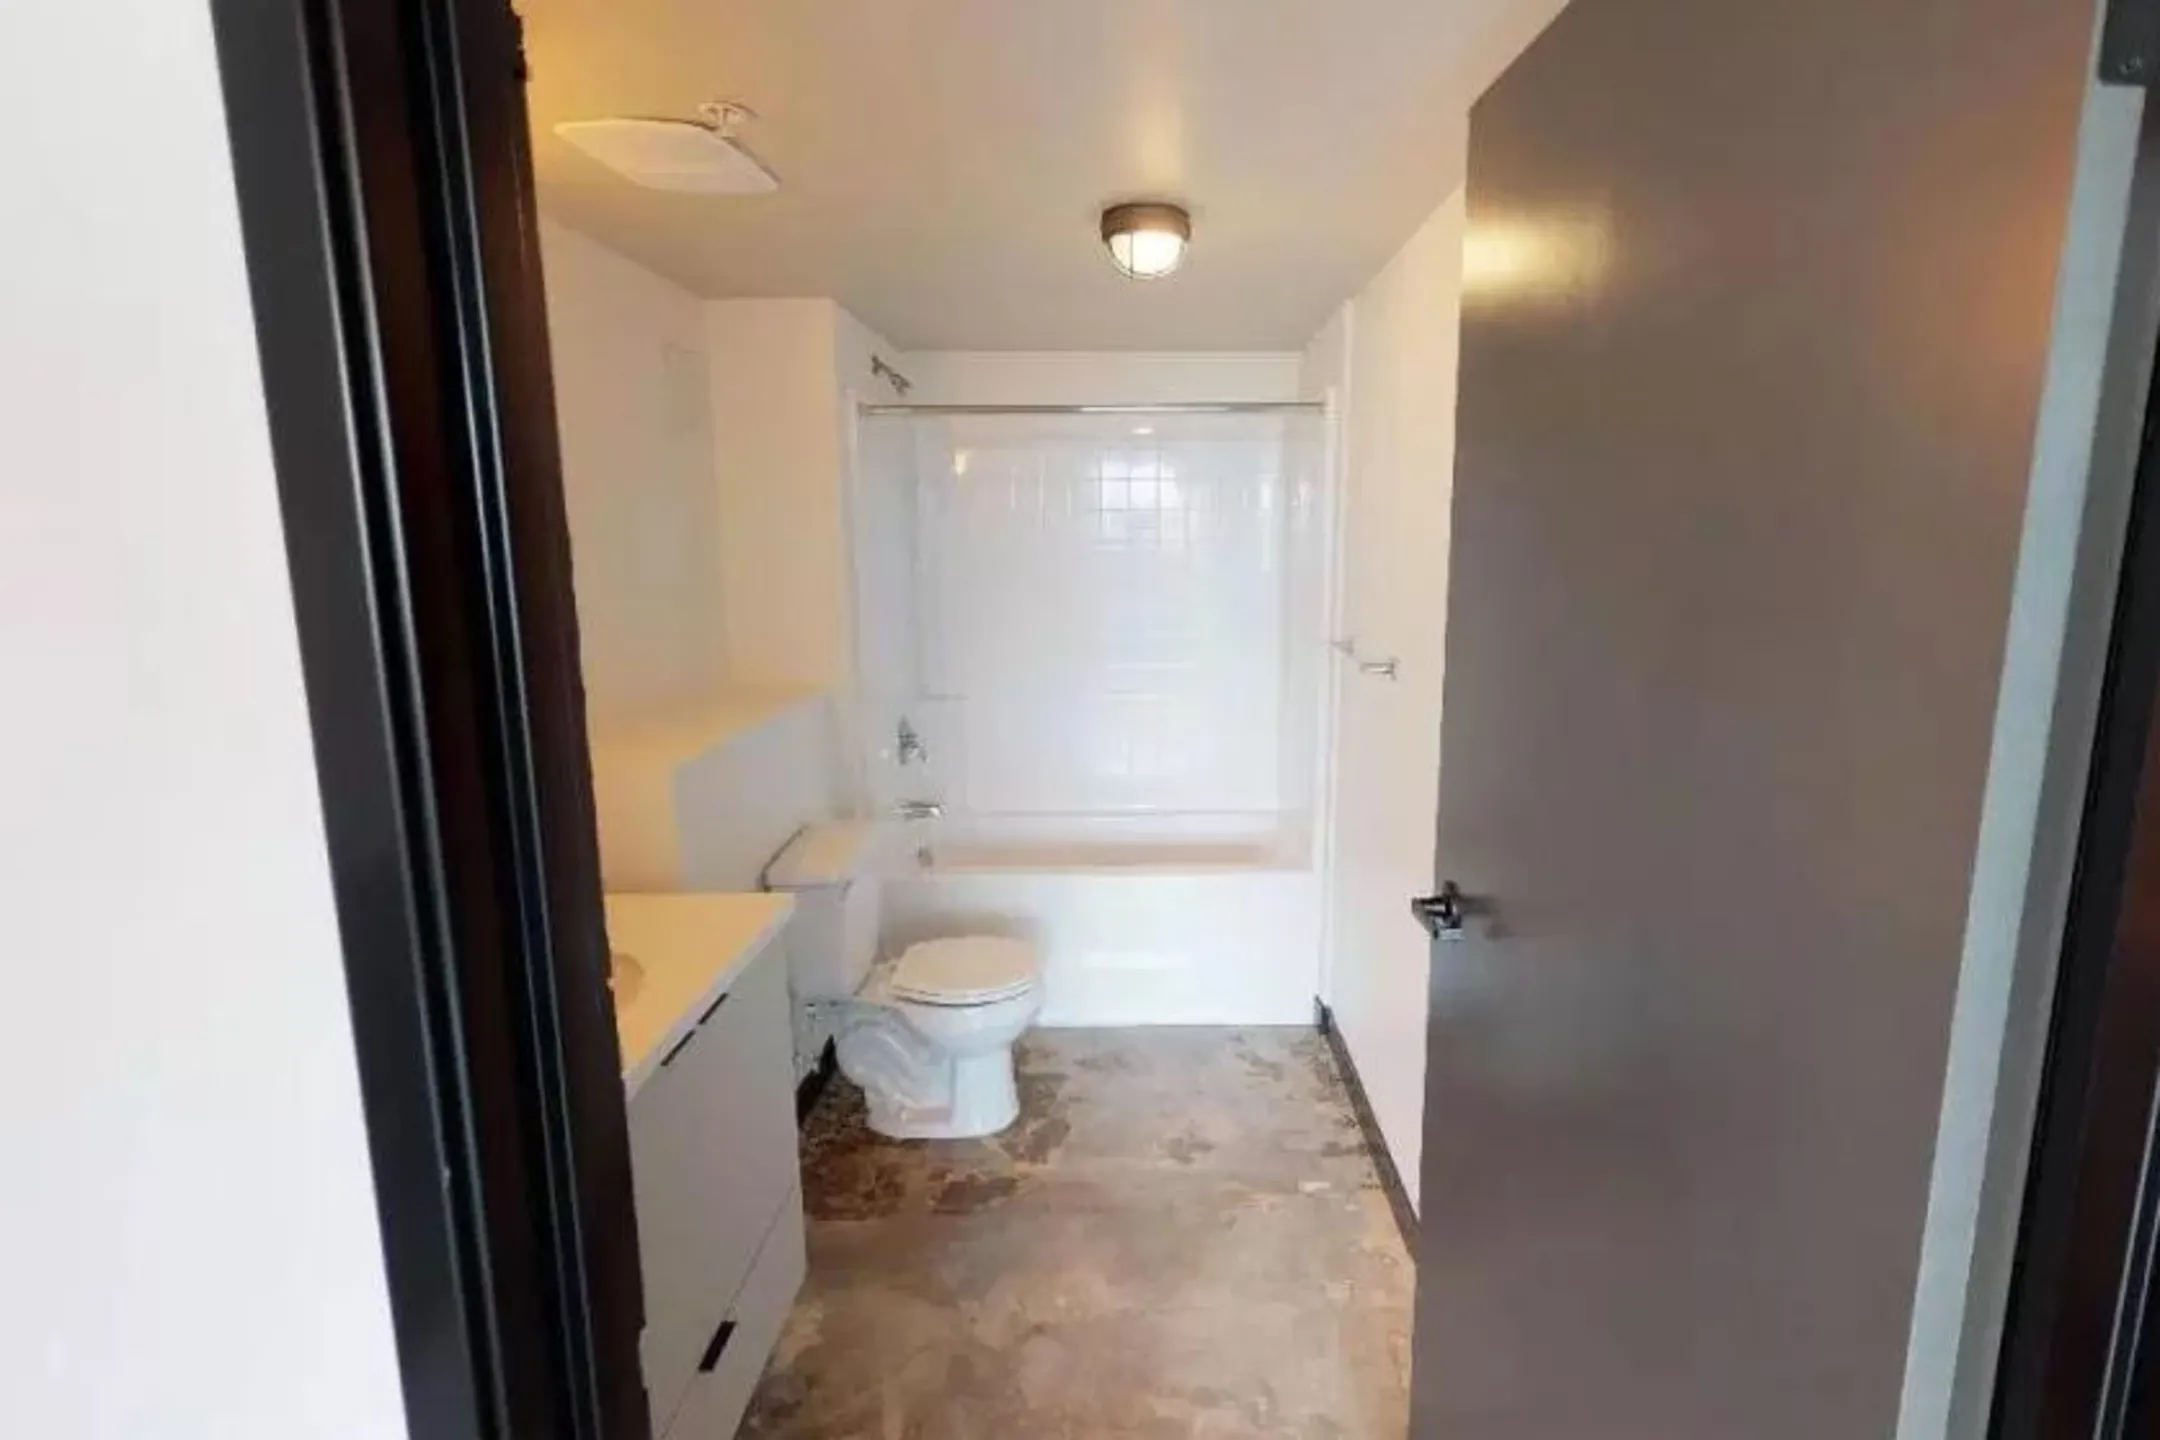 Bathroom - Loft 205 - Reno, NV